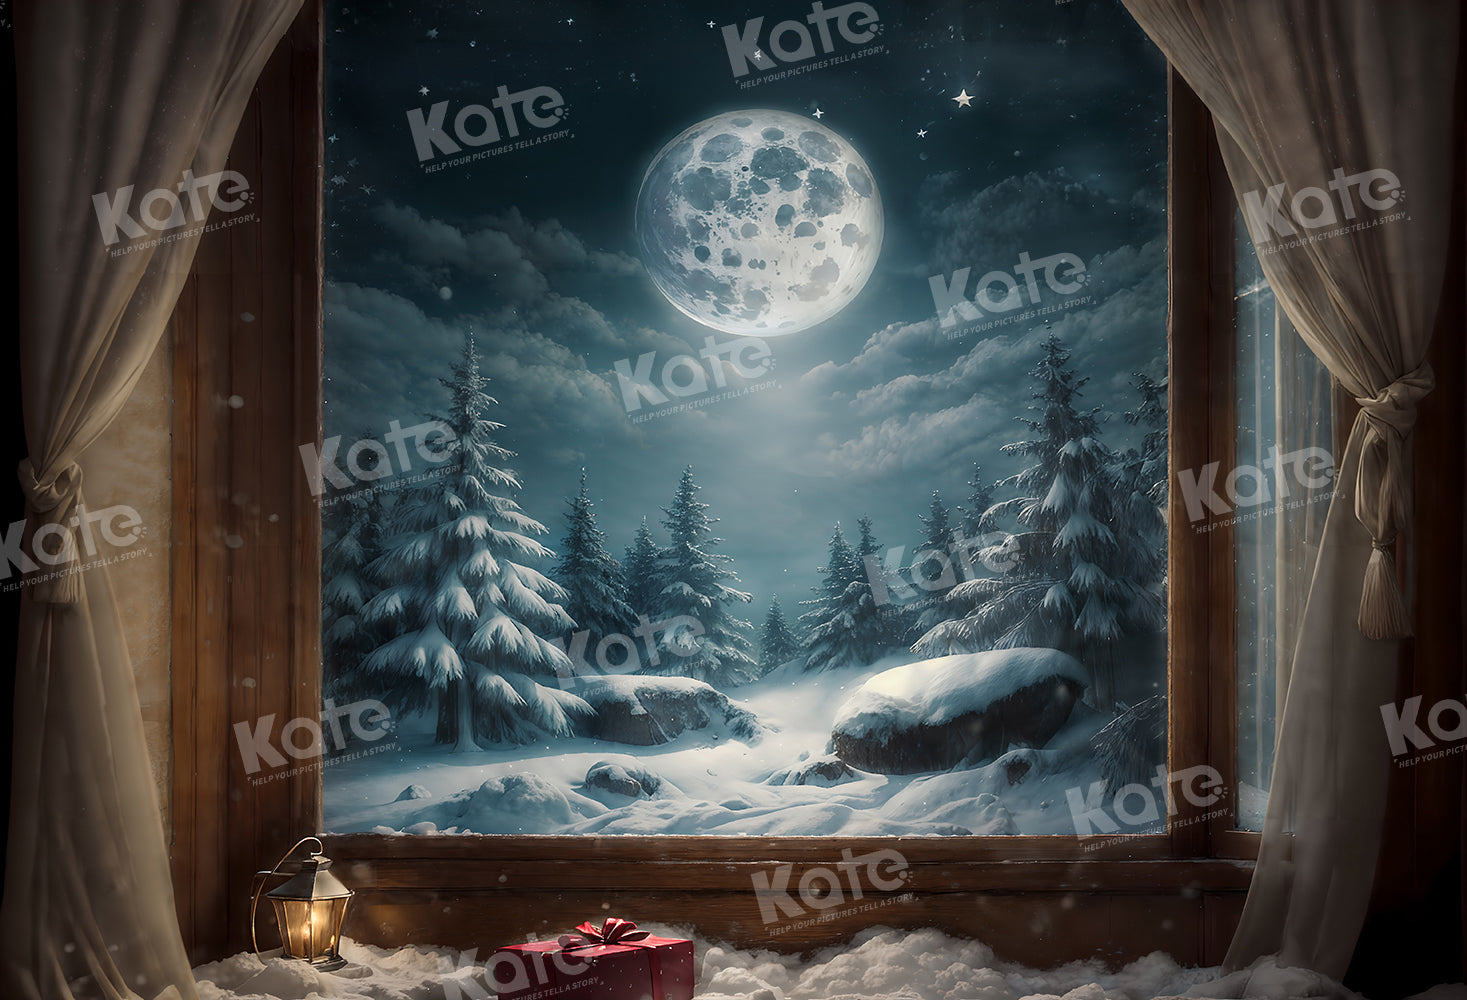 Kate Hiver Fenêtre Lune Neige Arbres Toile de fond pour la photographie